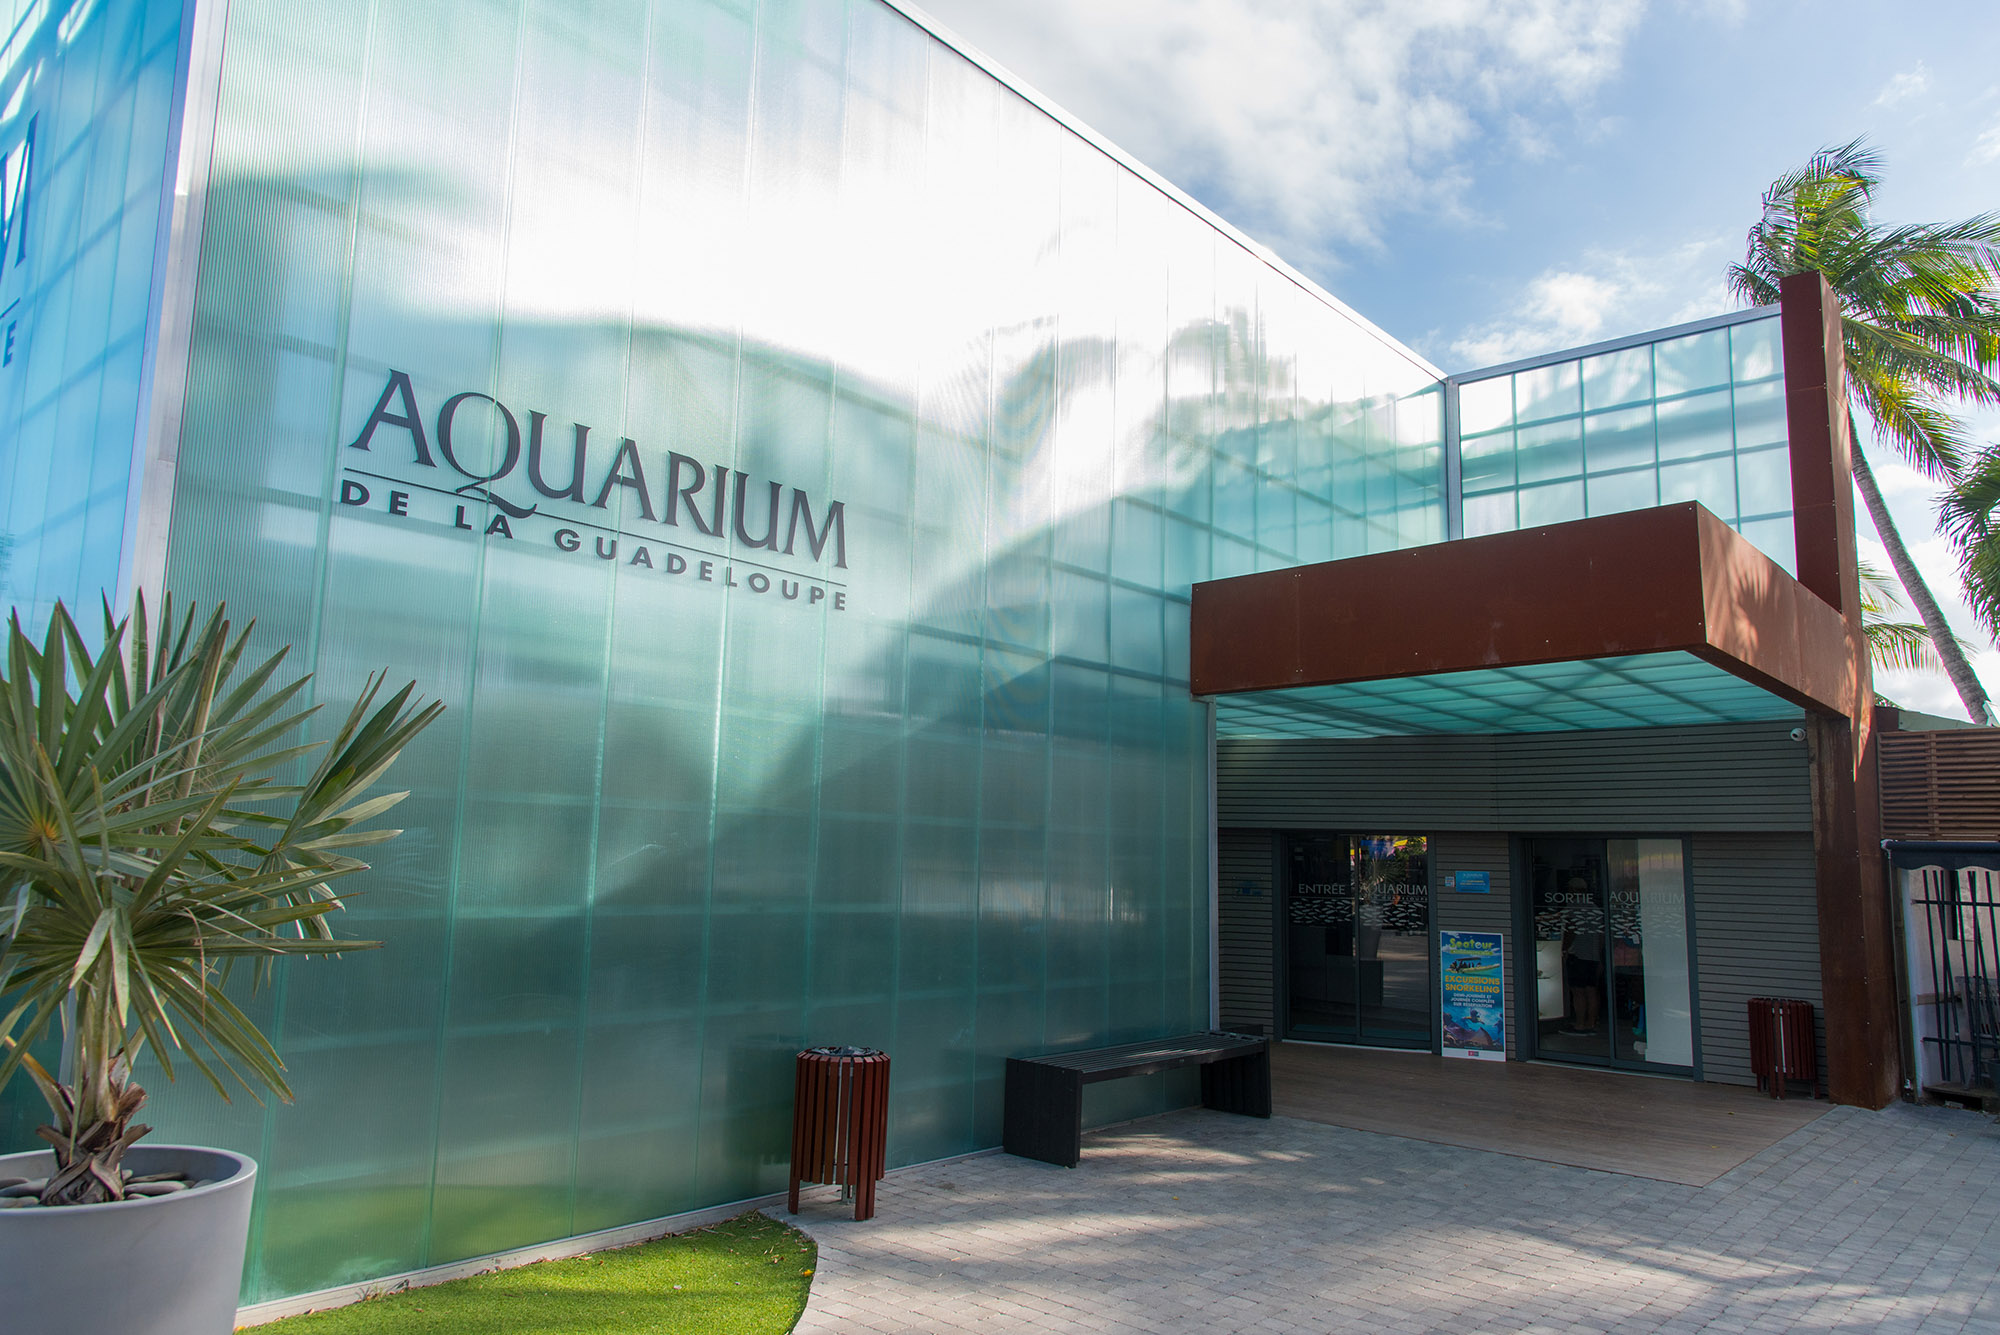 Aquarium de la Guadeloupe Offer Aquarium entrée tarif + de 12 ans